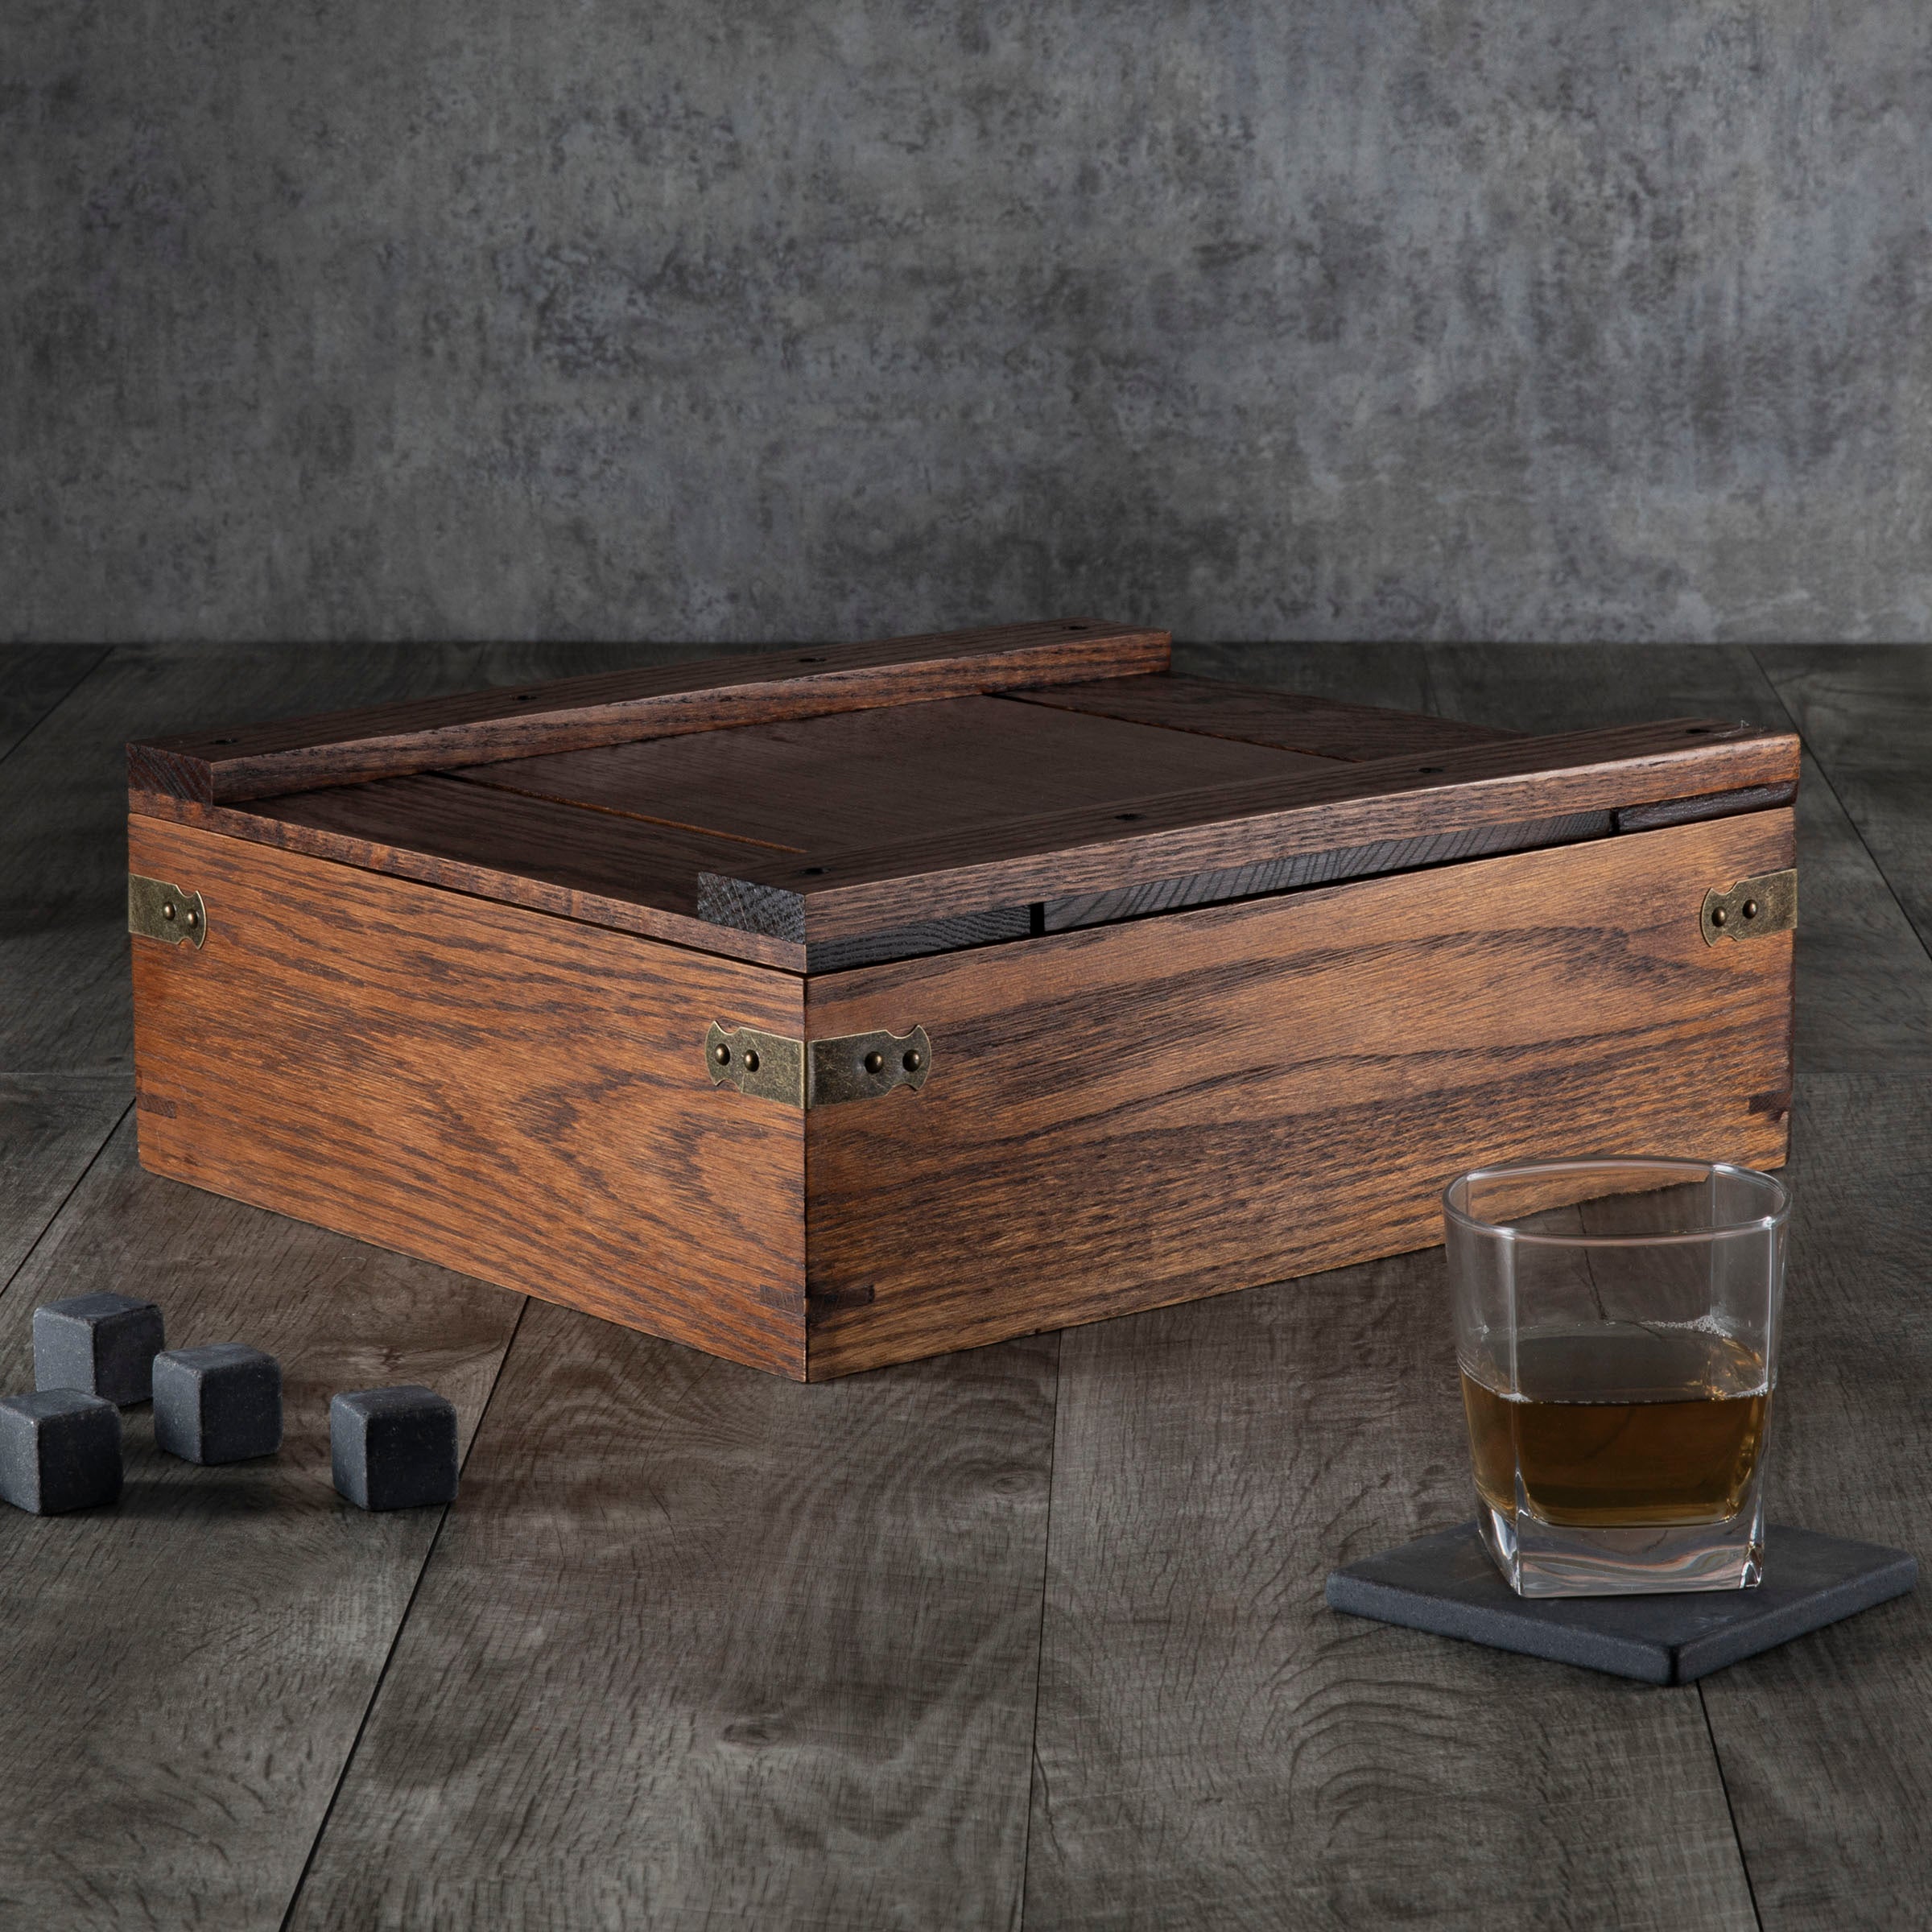 Georgia Bulldogs - Whiskey Box Gift Set